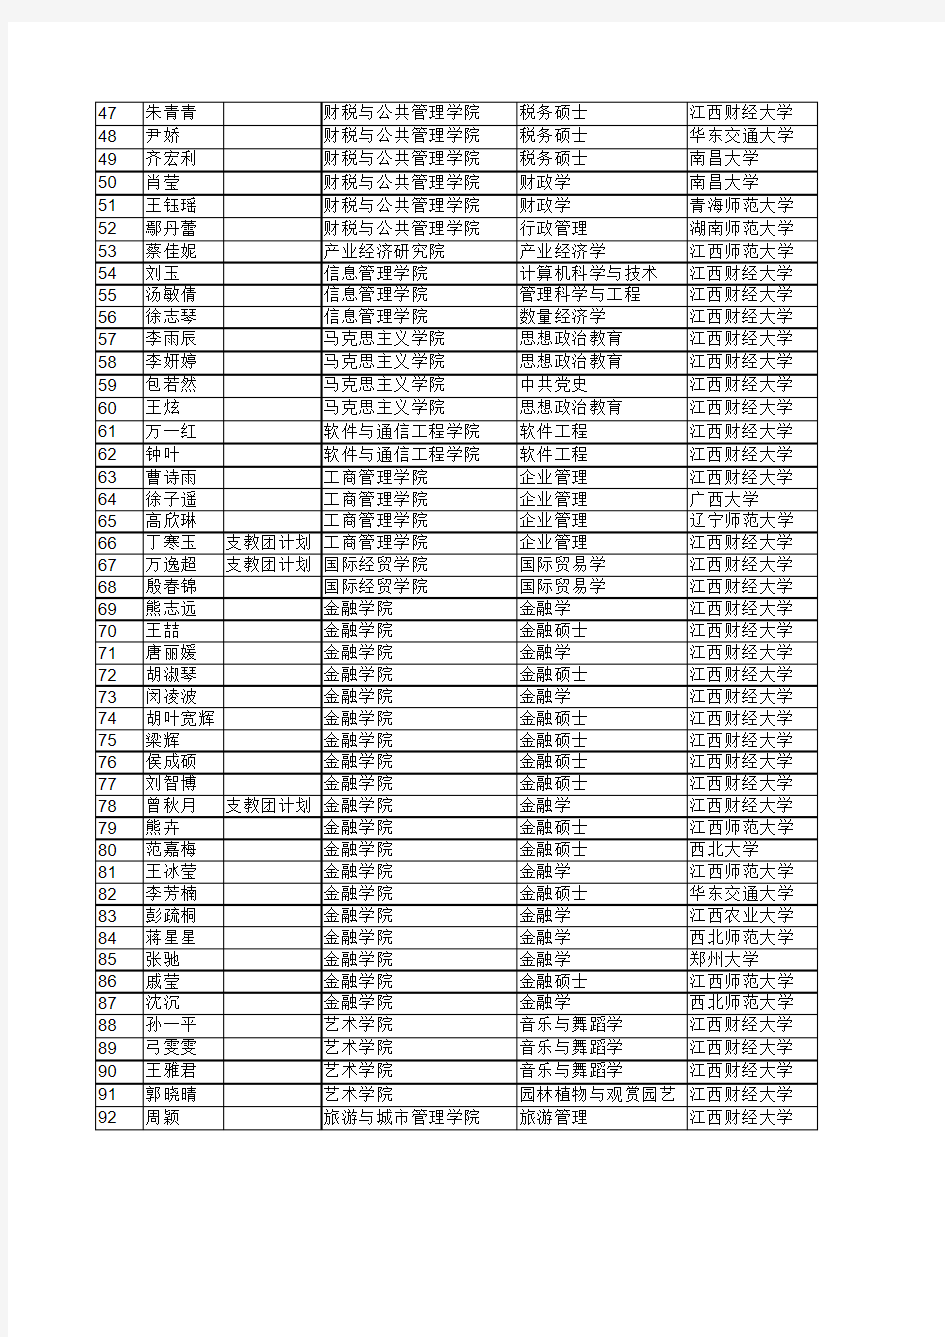 江西财经大学2015年接收推免生名单公示xls